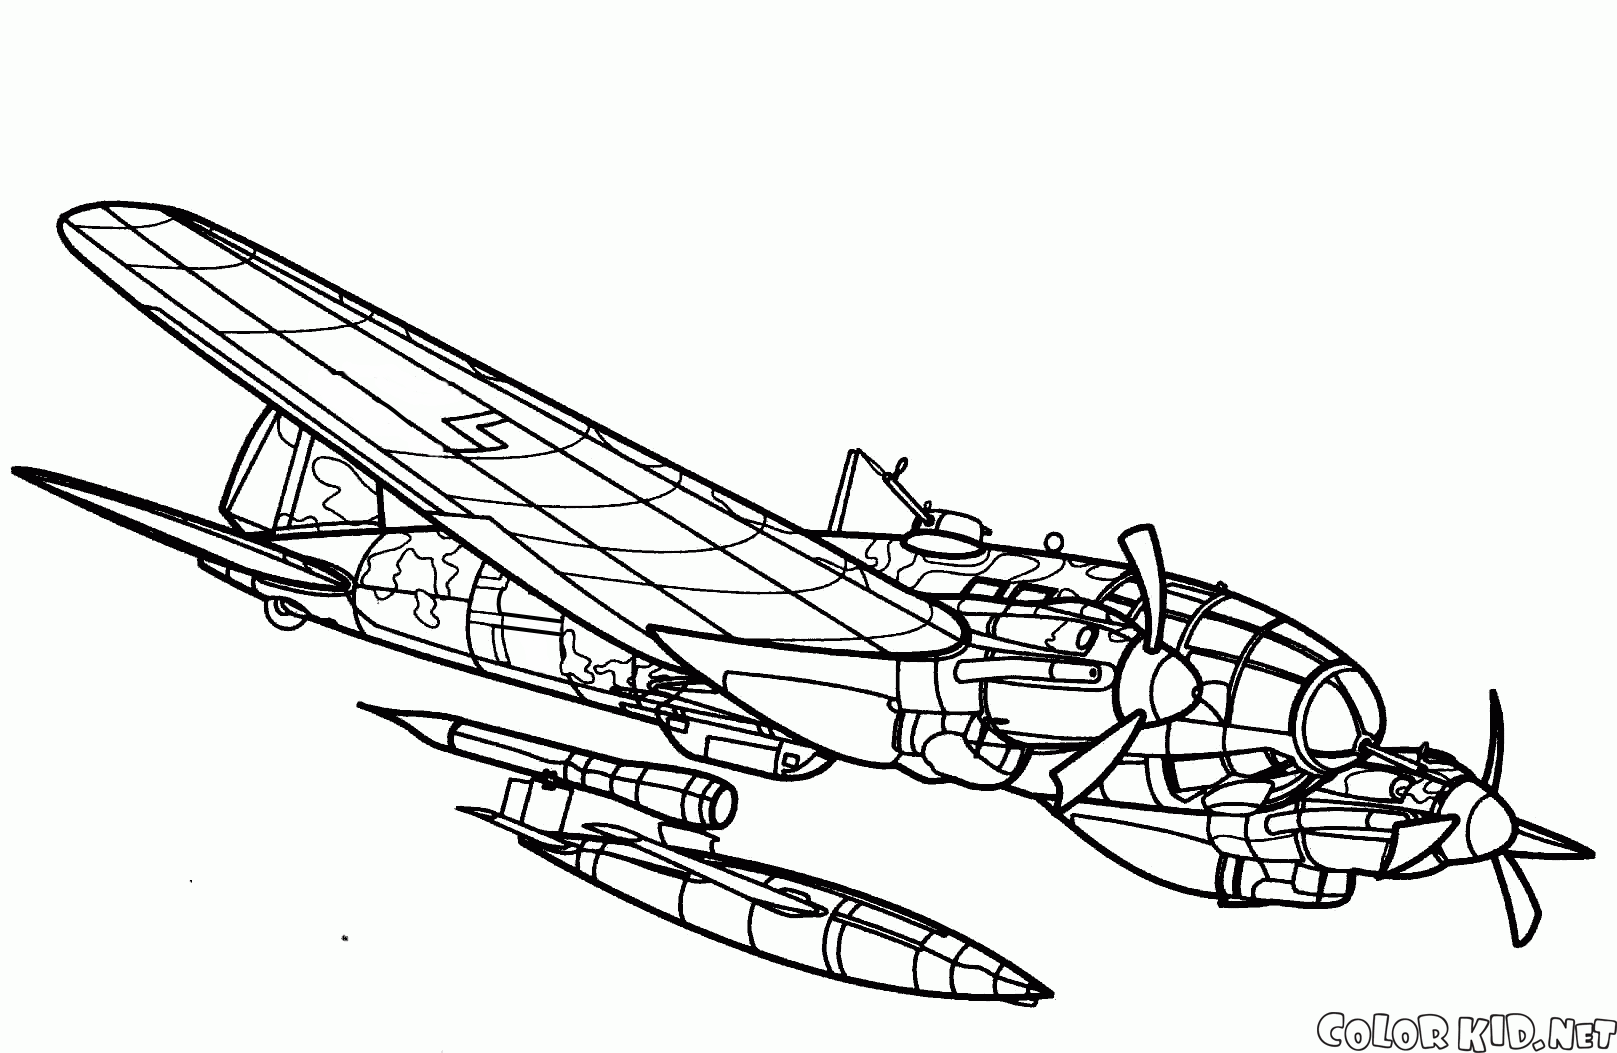 ハインケルHE-111H-22爆撃機